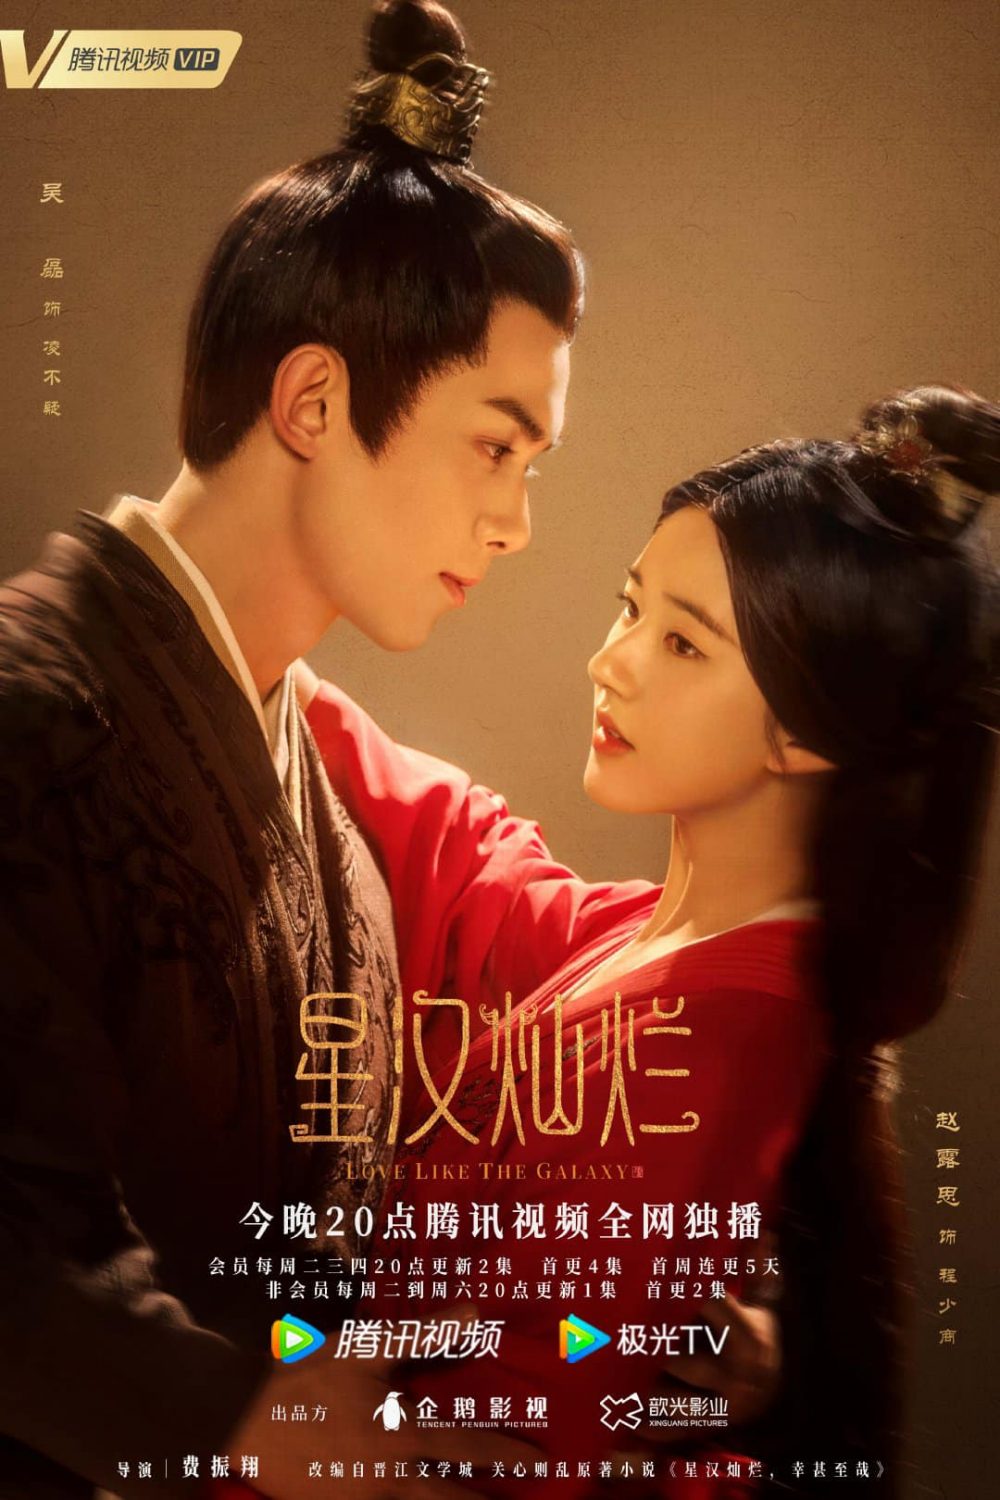 Tinh Hán Xán Lạn cũng được đánh giá là bộ phim cổ trang Trung Quốc nổi bật trong năm 2022